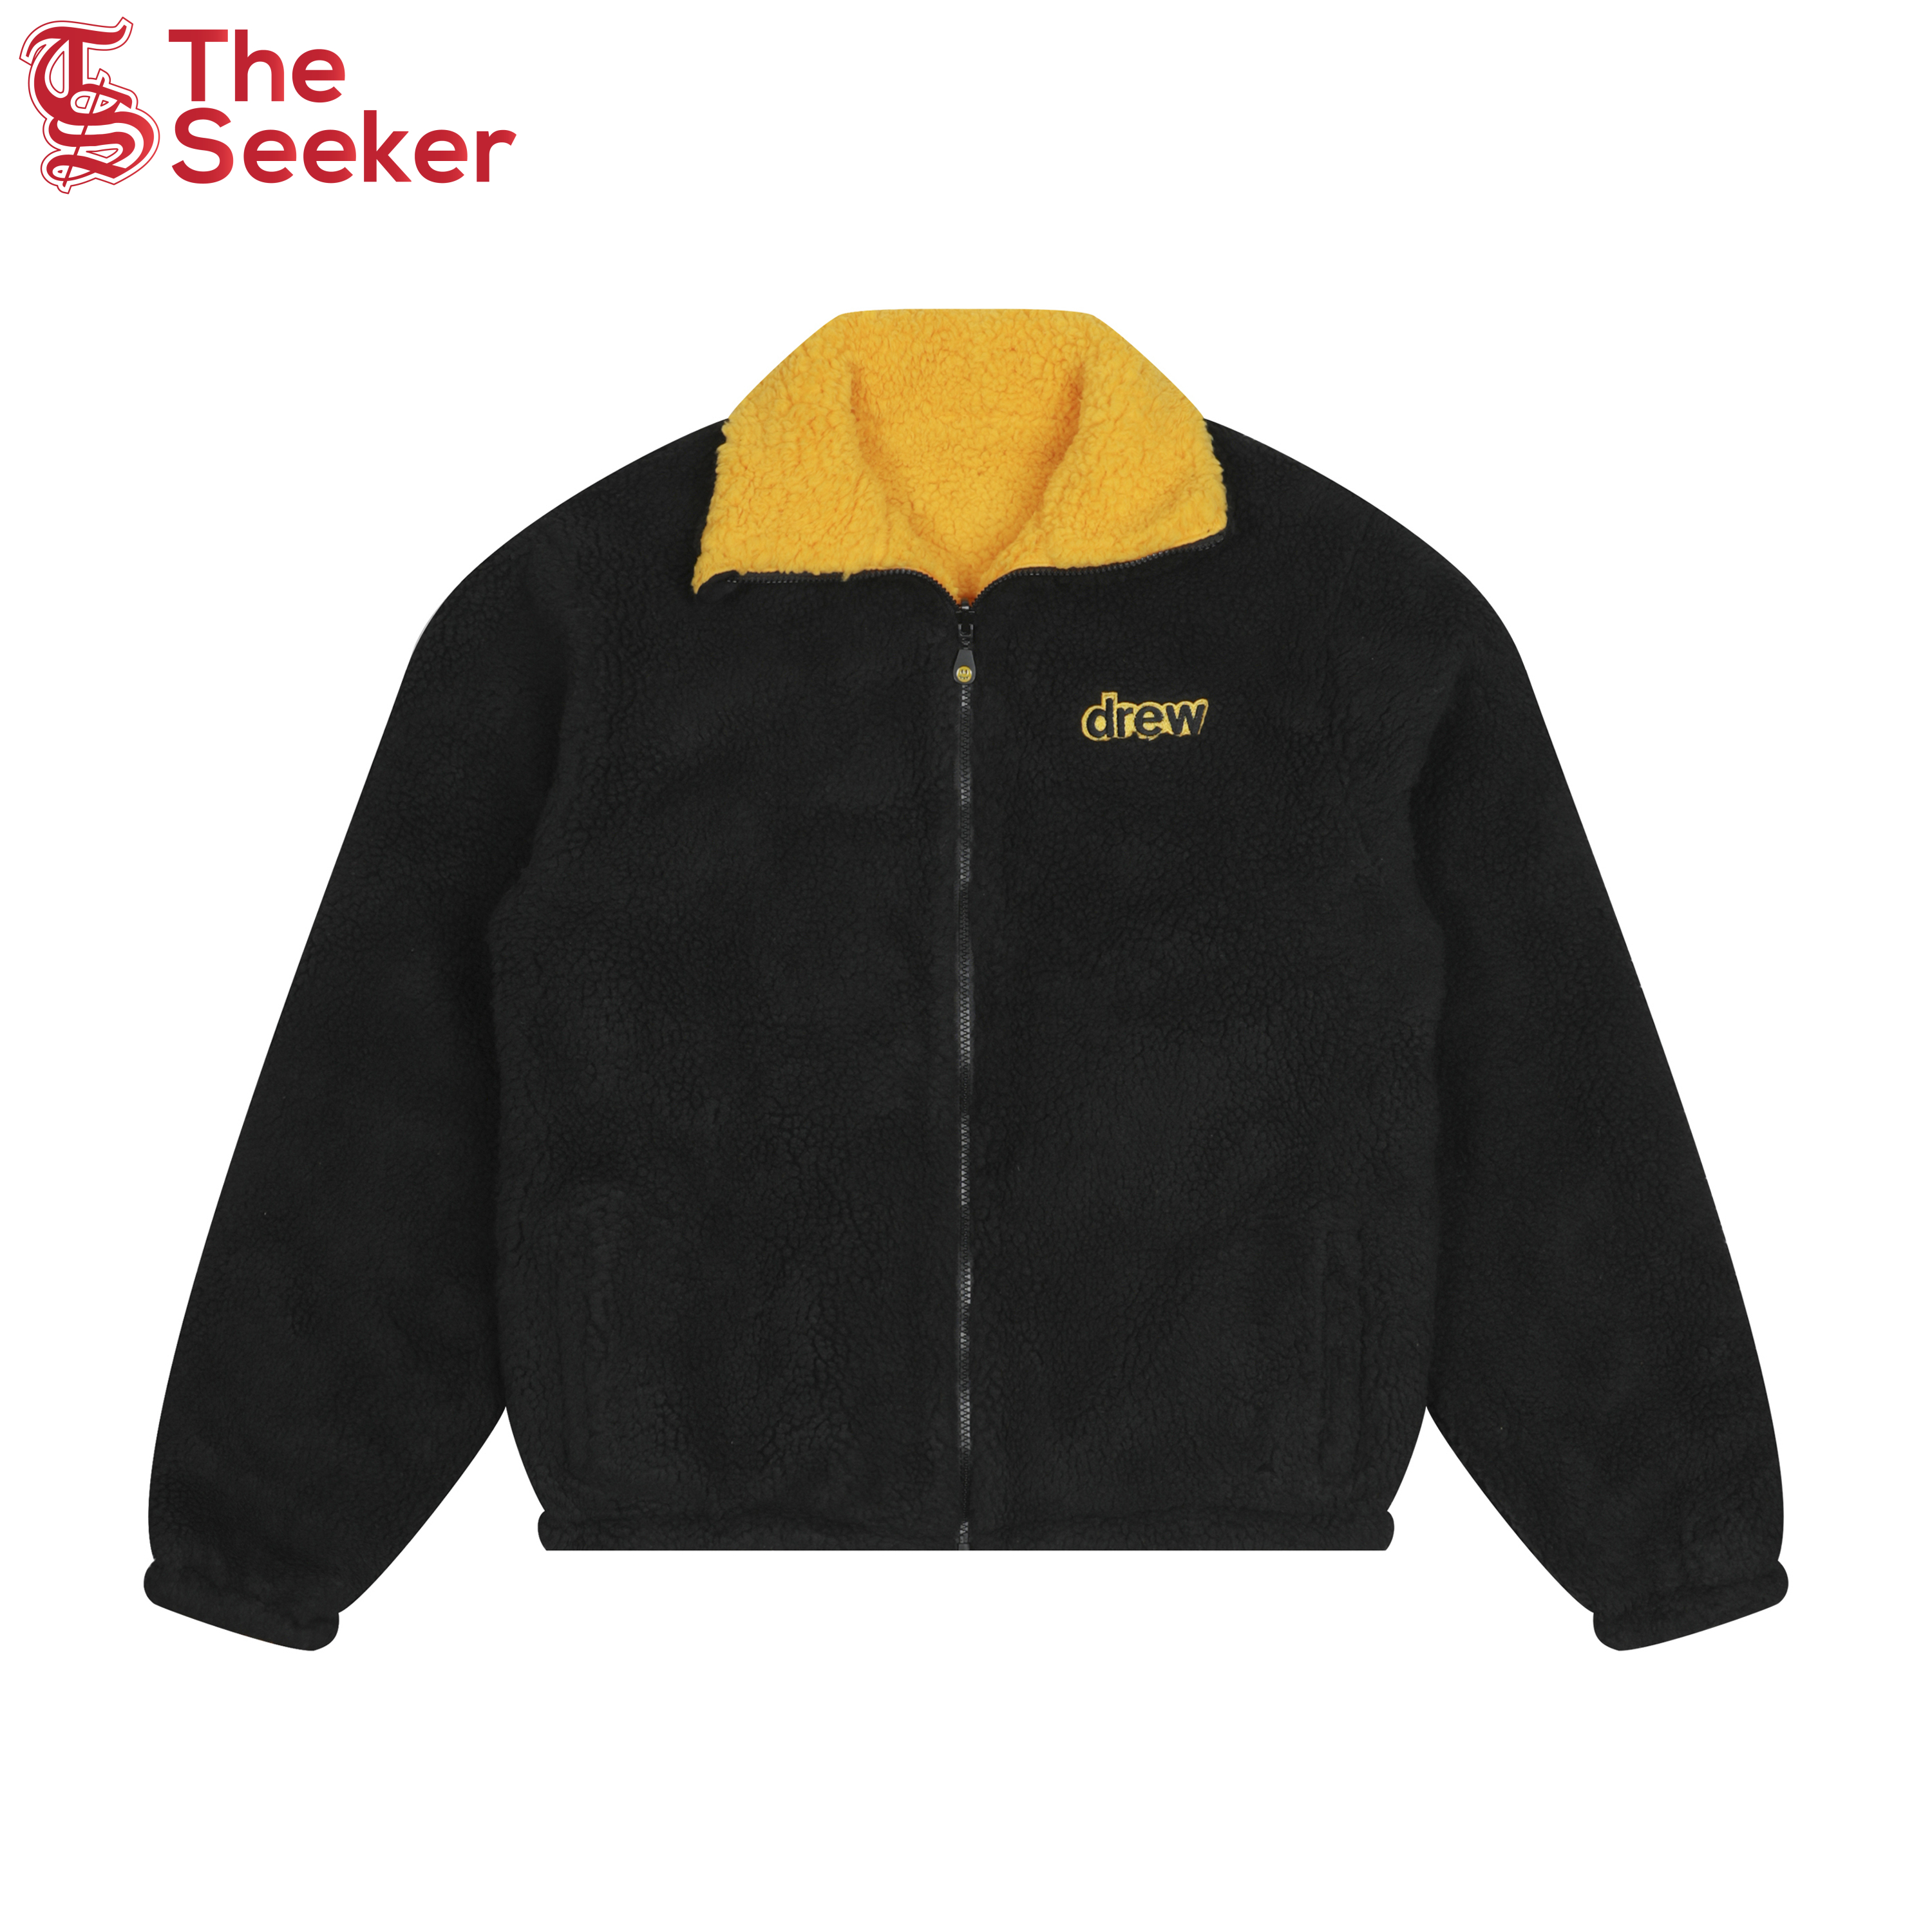 drew house reversible zip up jacket black/golden yellow